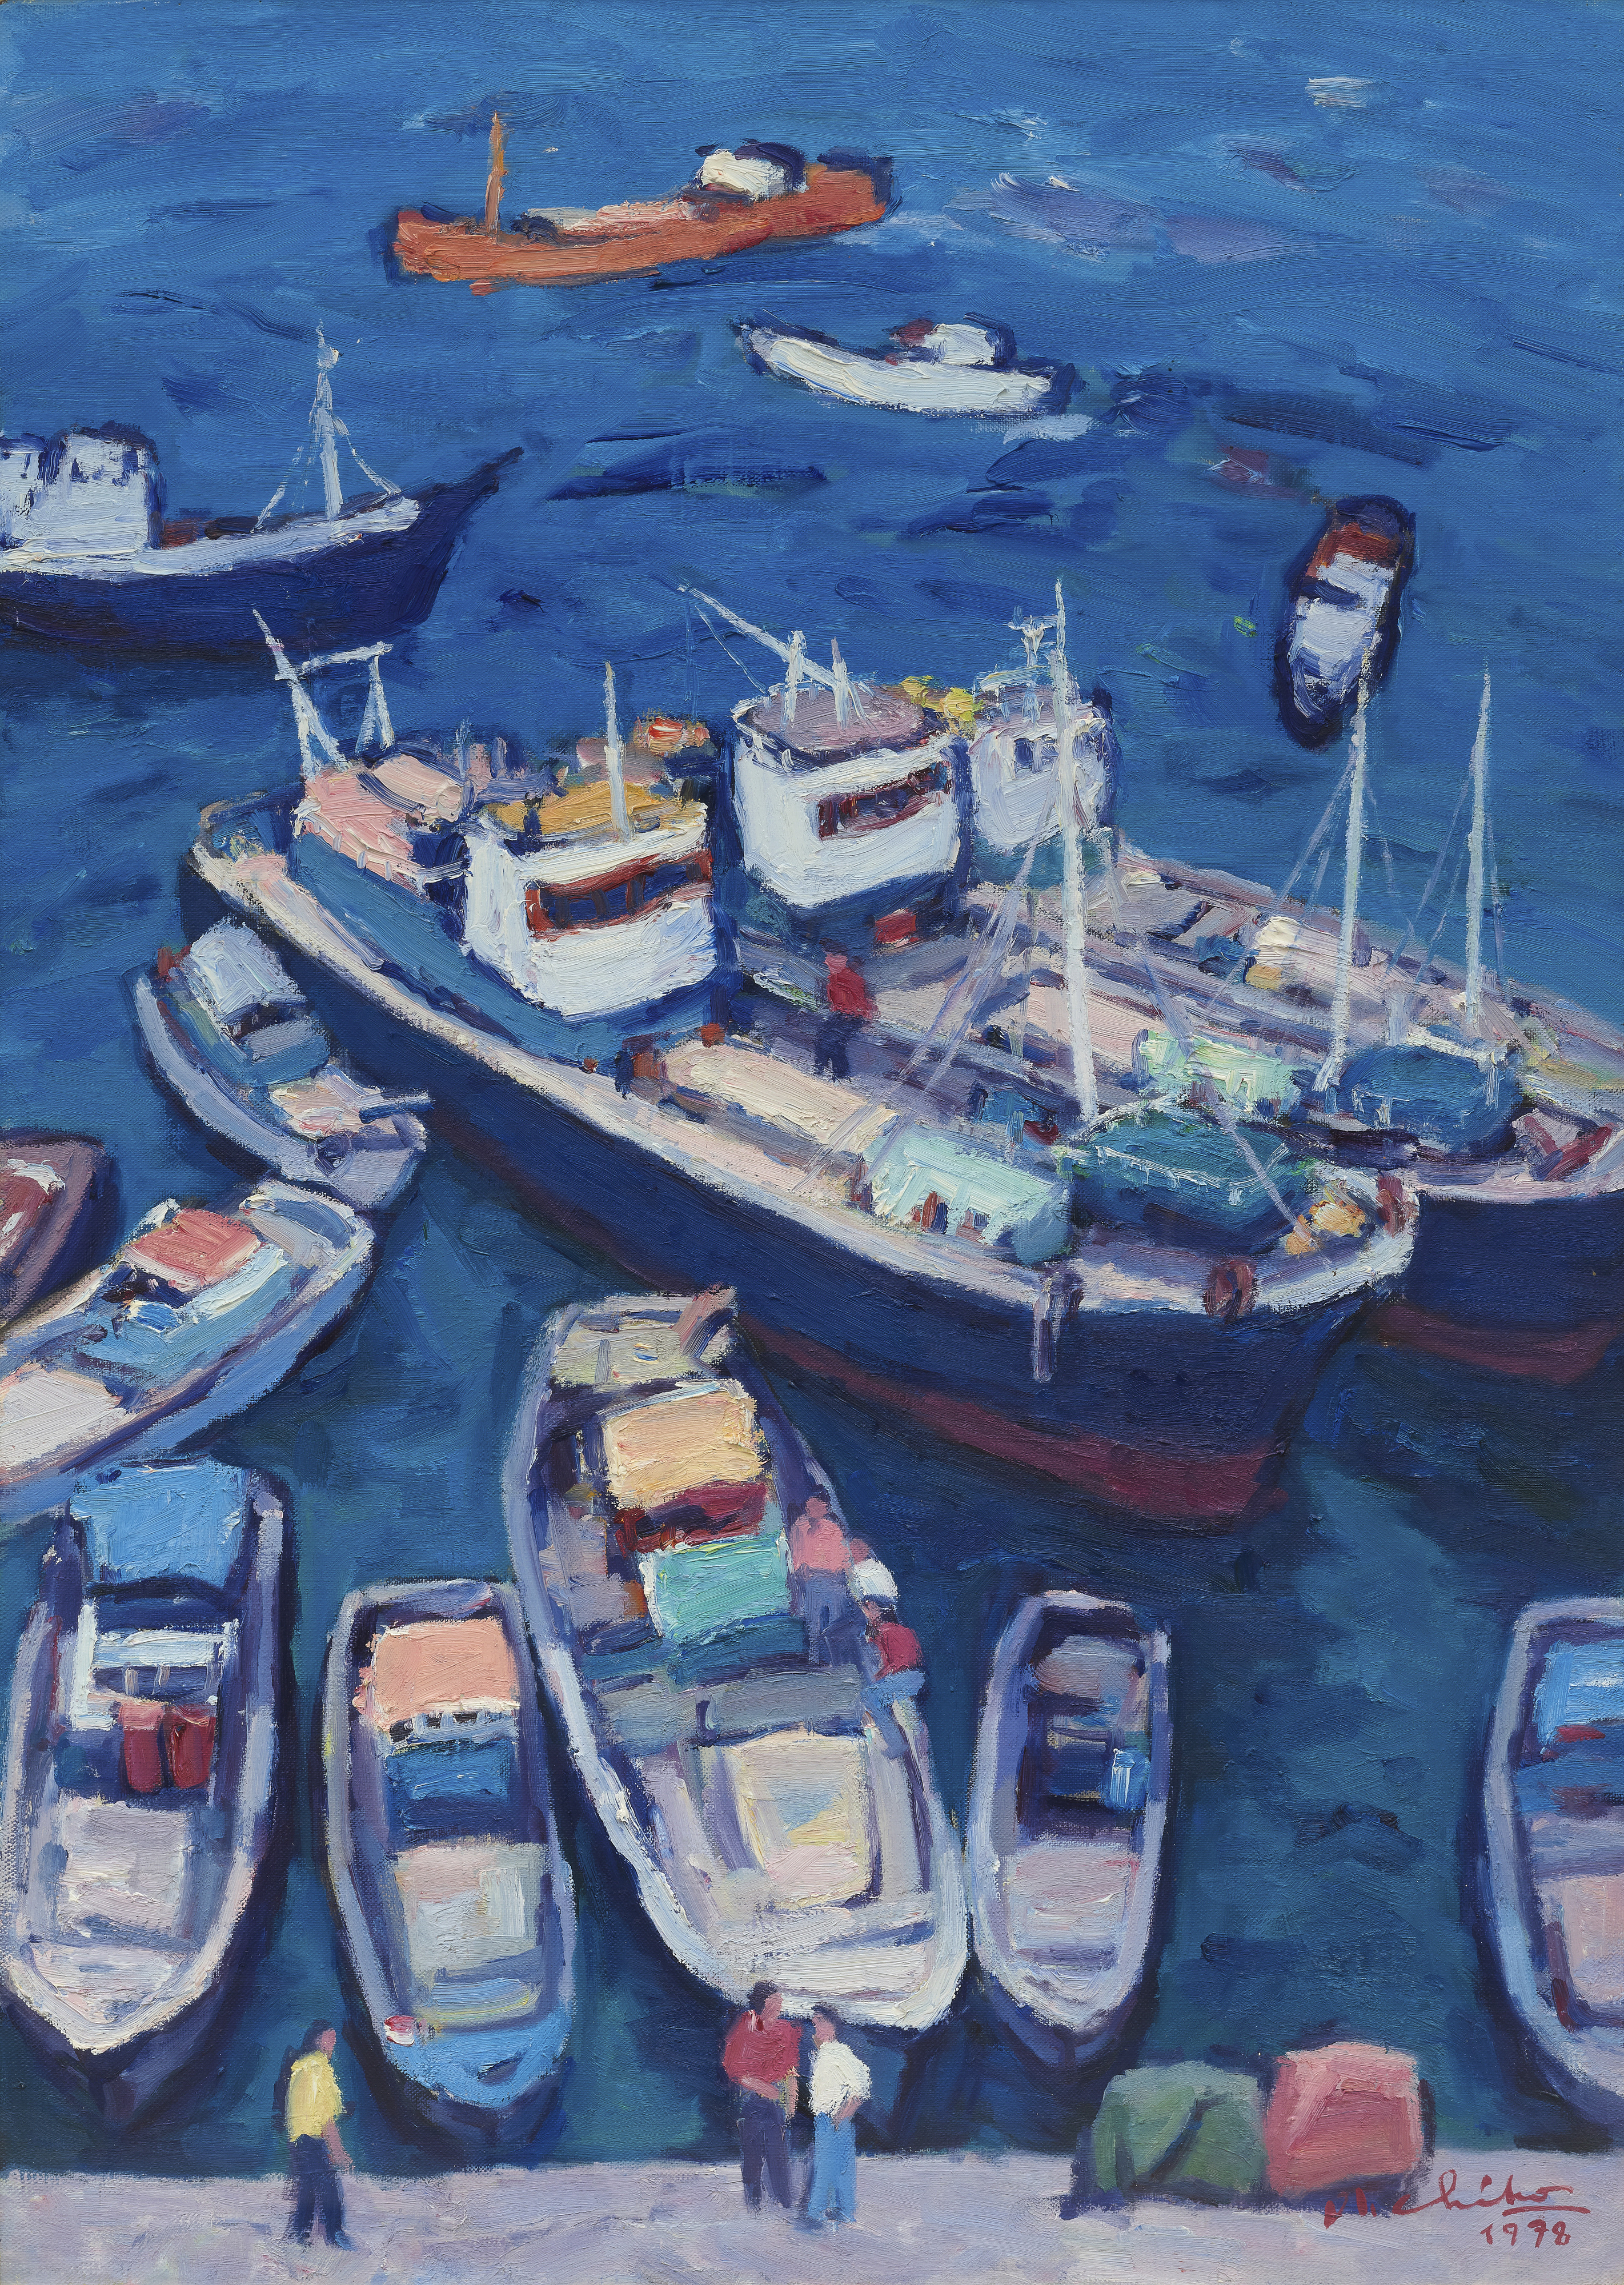 오지호, 여수항 풍경, 1978, 캔버스에 유채, 90×64.7cm, 국립현대미술관 이건희컬렉션